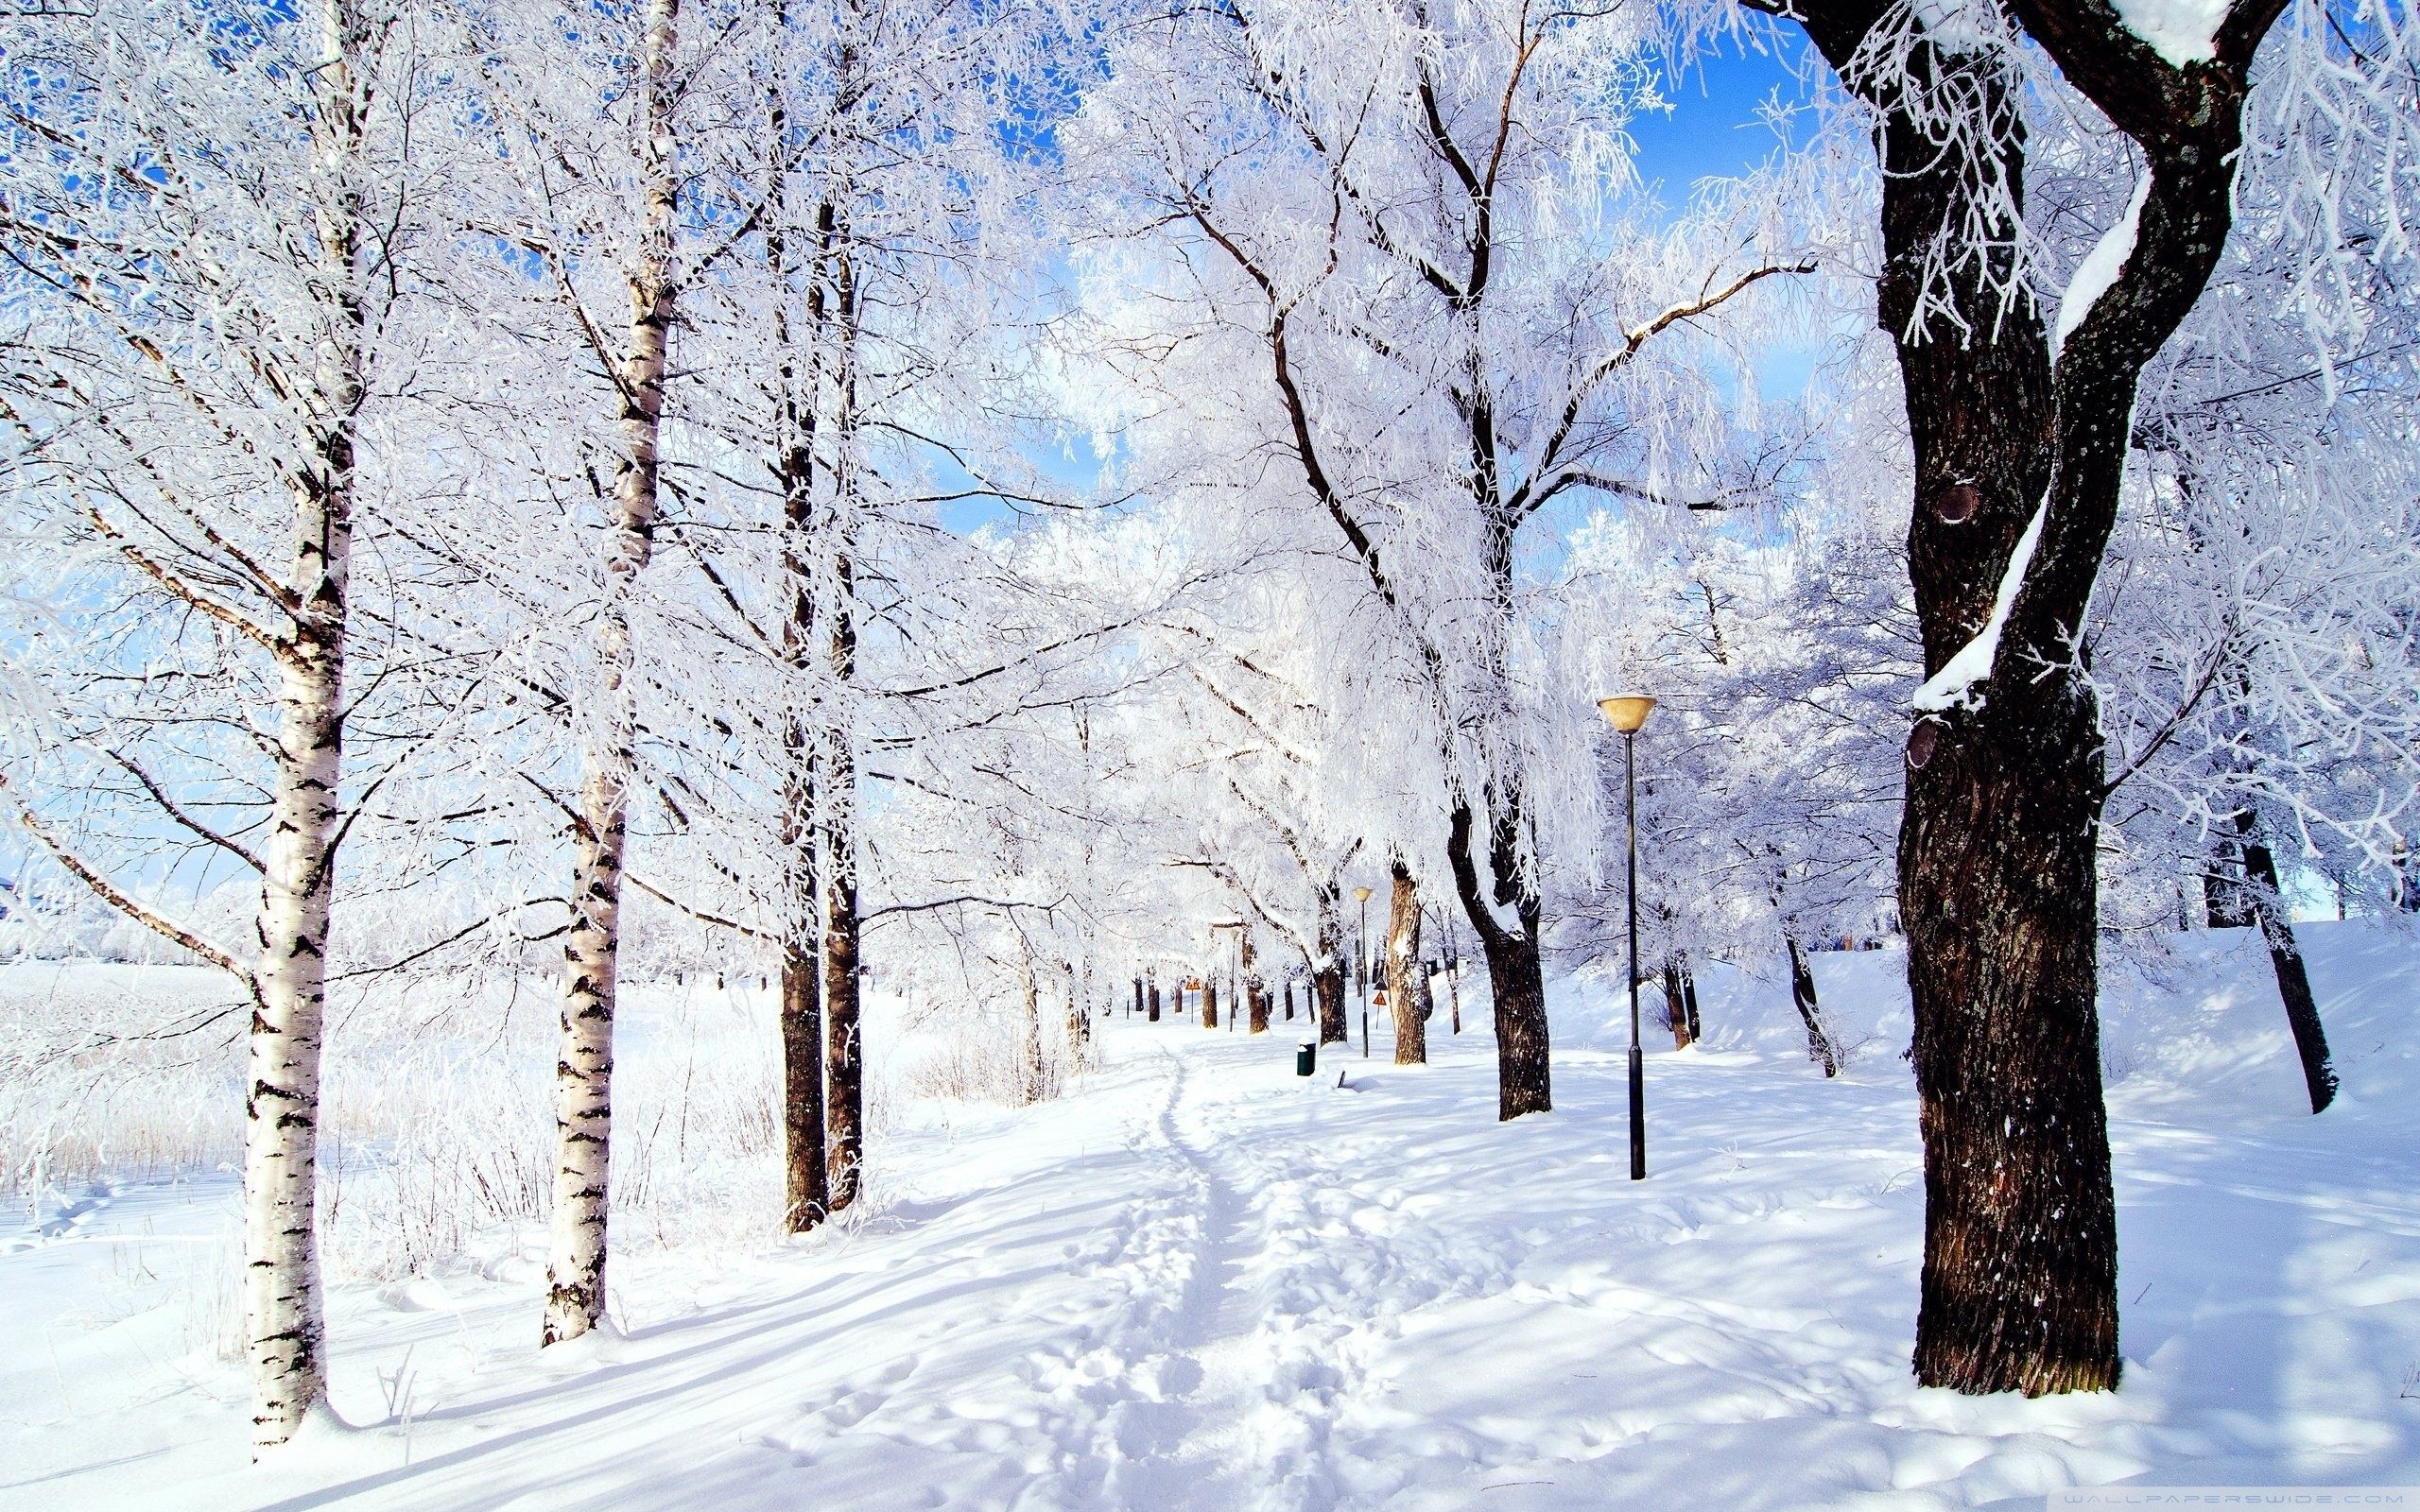 carta da parati invernale del paese delle meraviglie,neve,albero,inverno,paesaggio naturale,natura